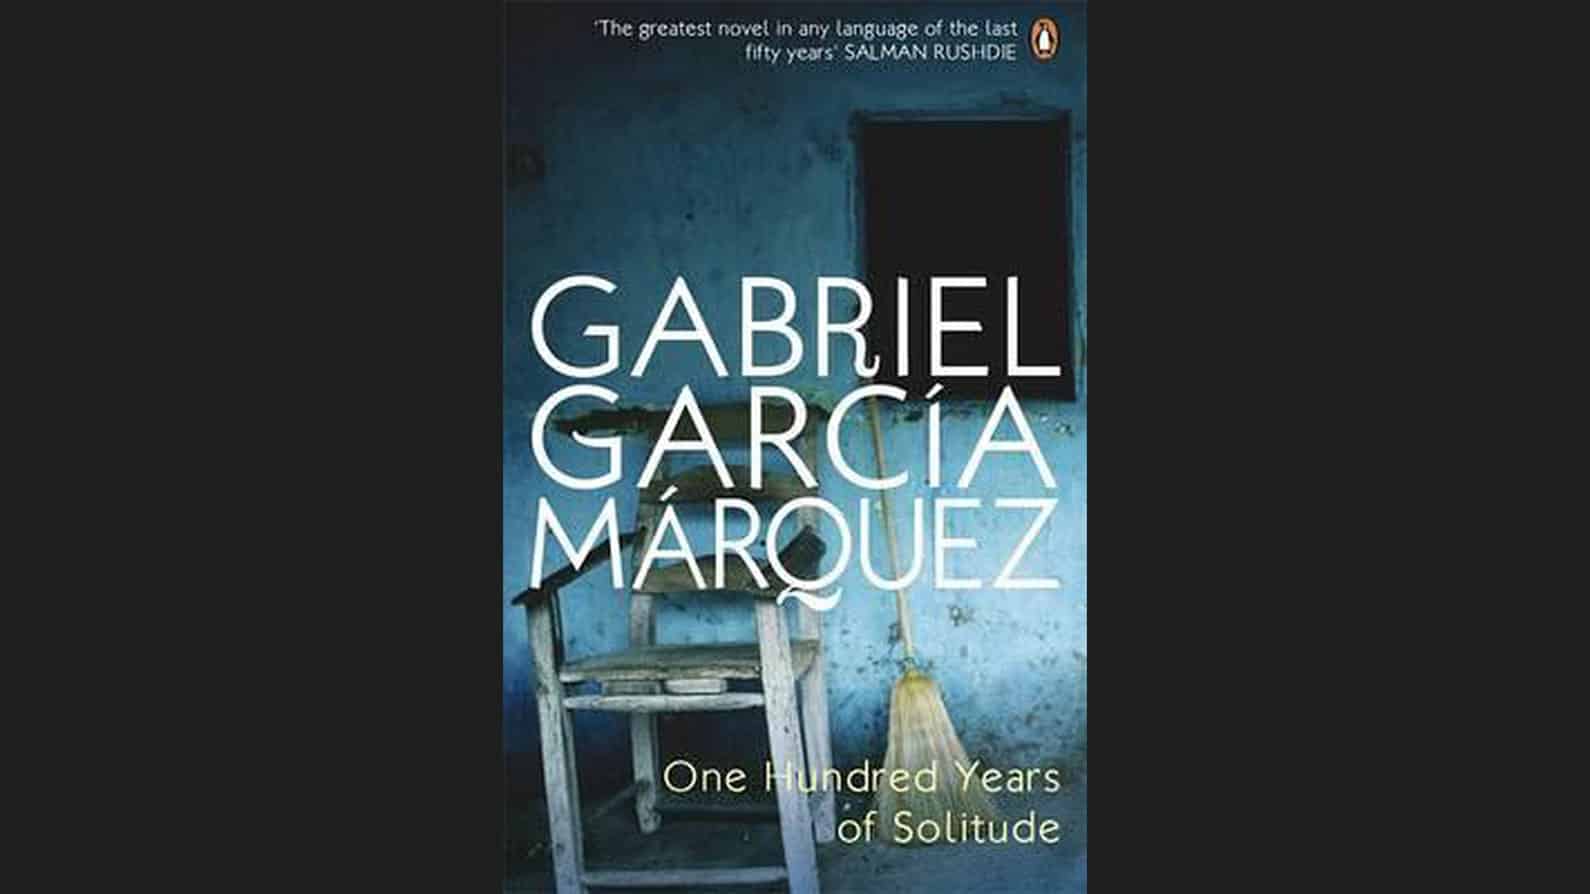 One Hundred Years of Solitude van Gabriel García Márquez boek kaft cover recensie stoel bezem